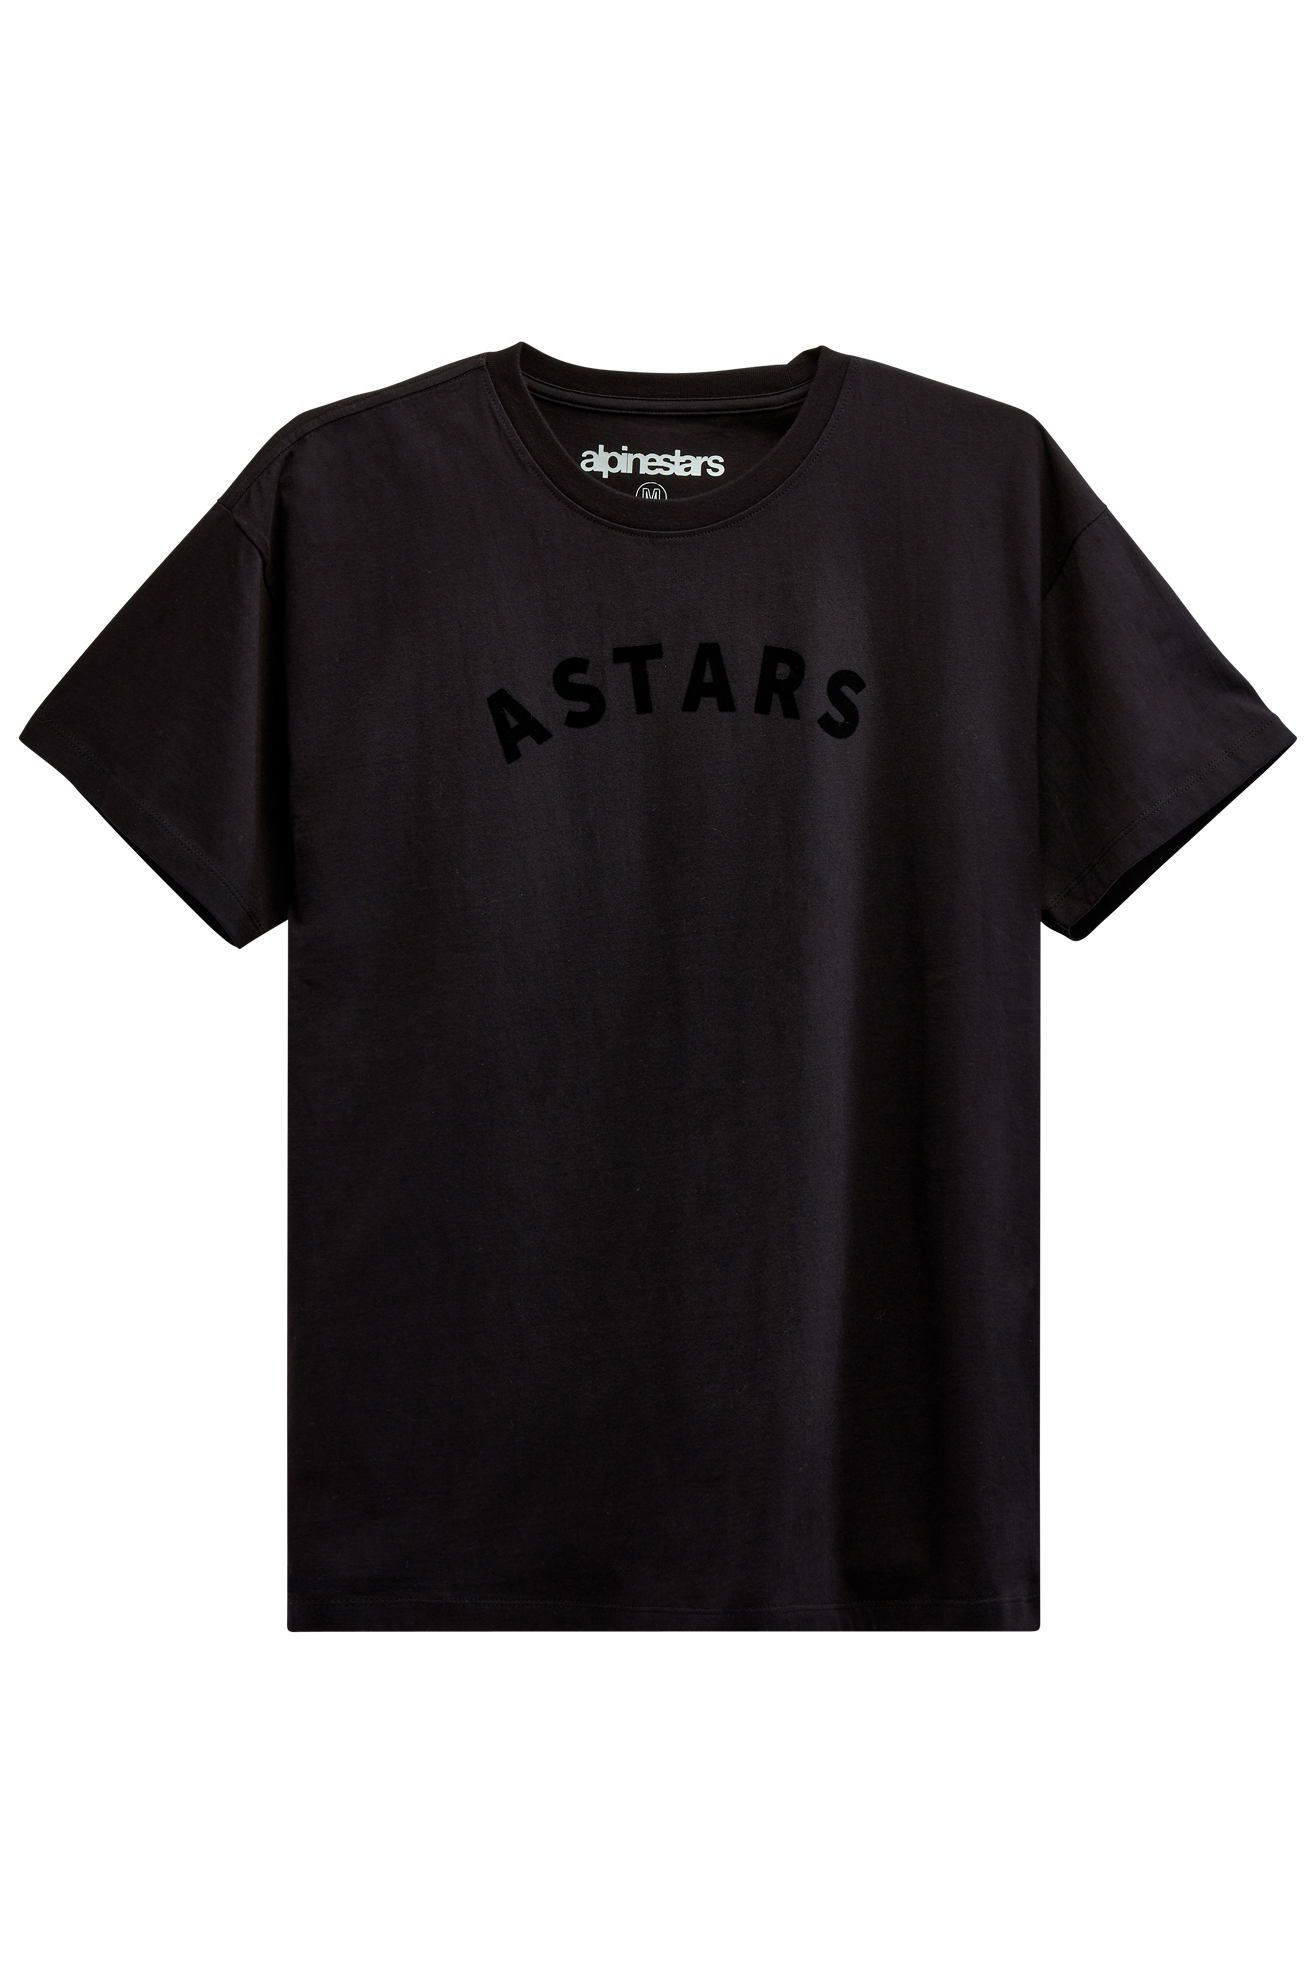 Alpinestars T-Shirt  Aptly SS Knit Nera